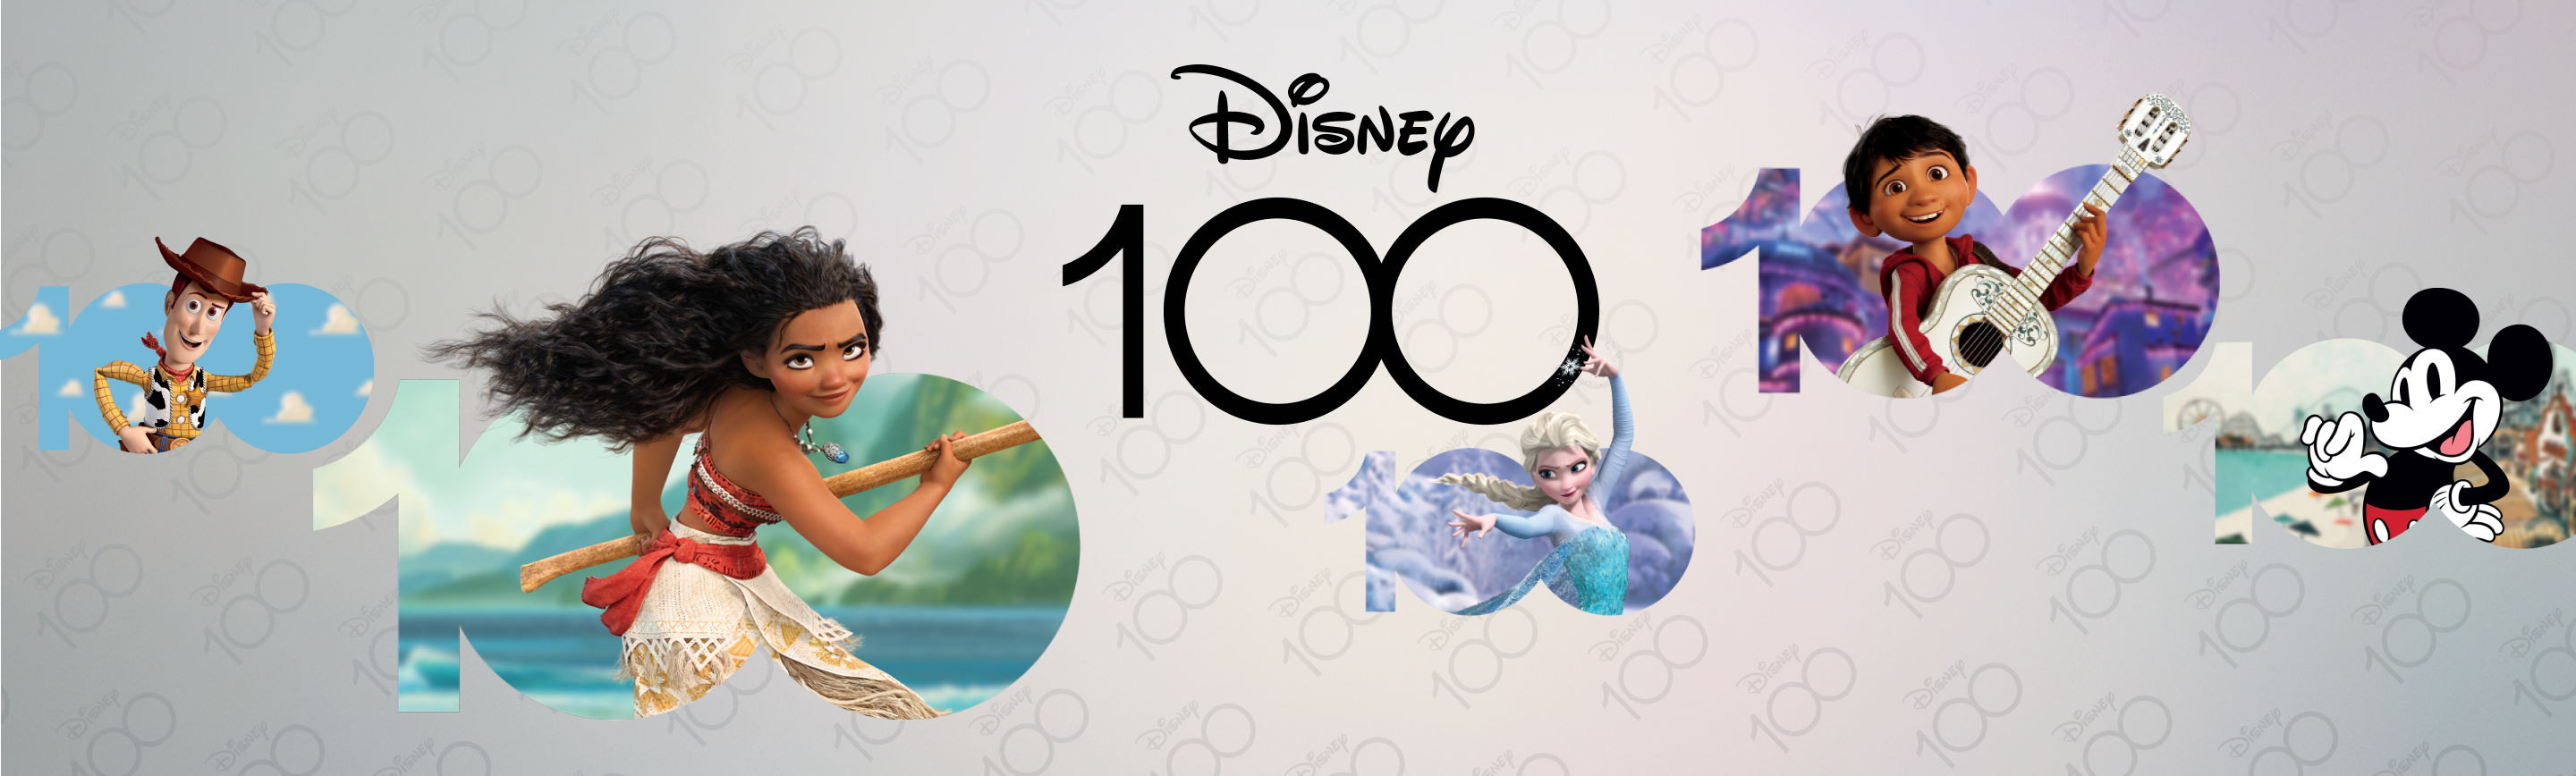 Quiz Disney 100 Header Image